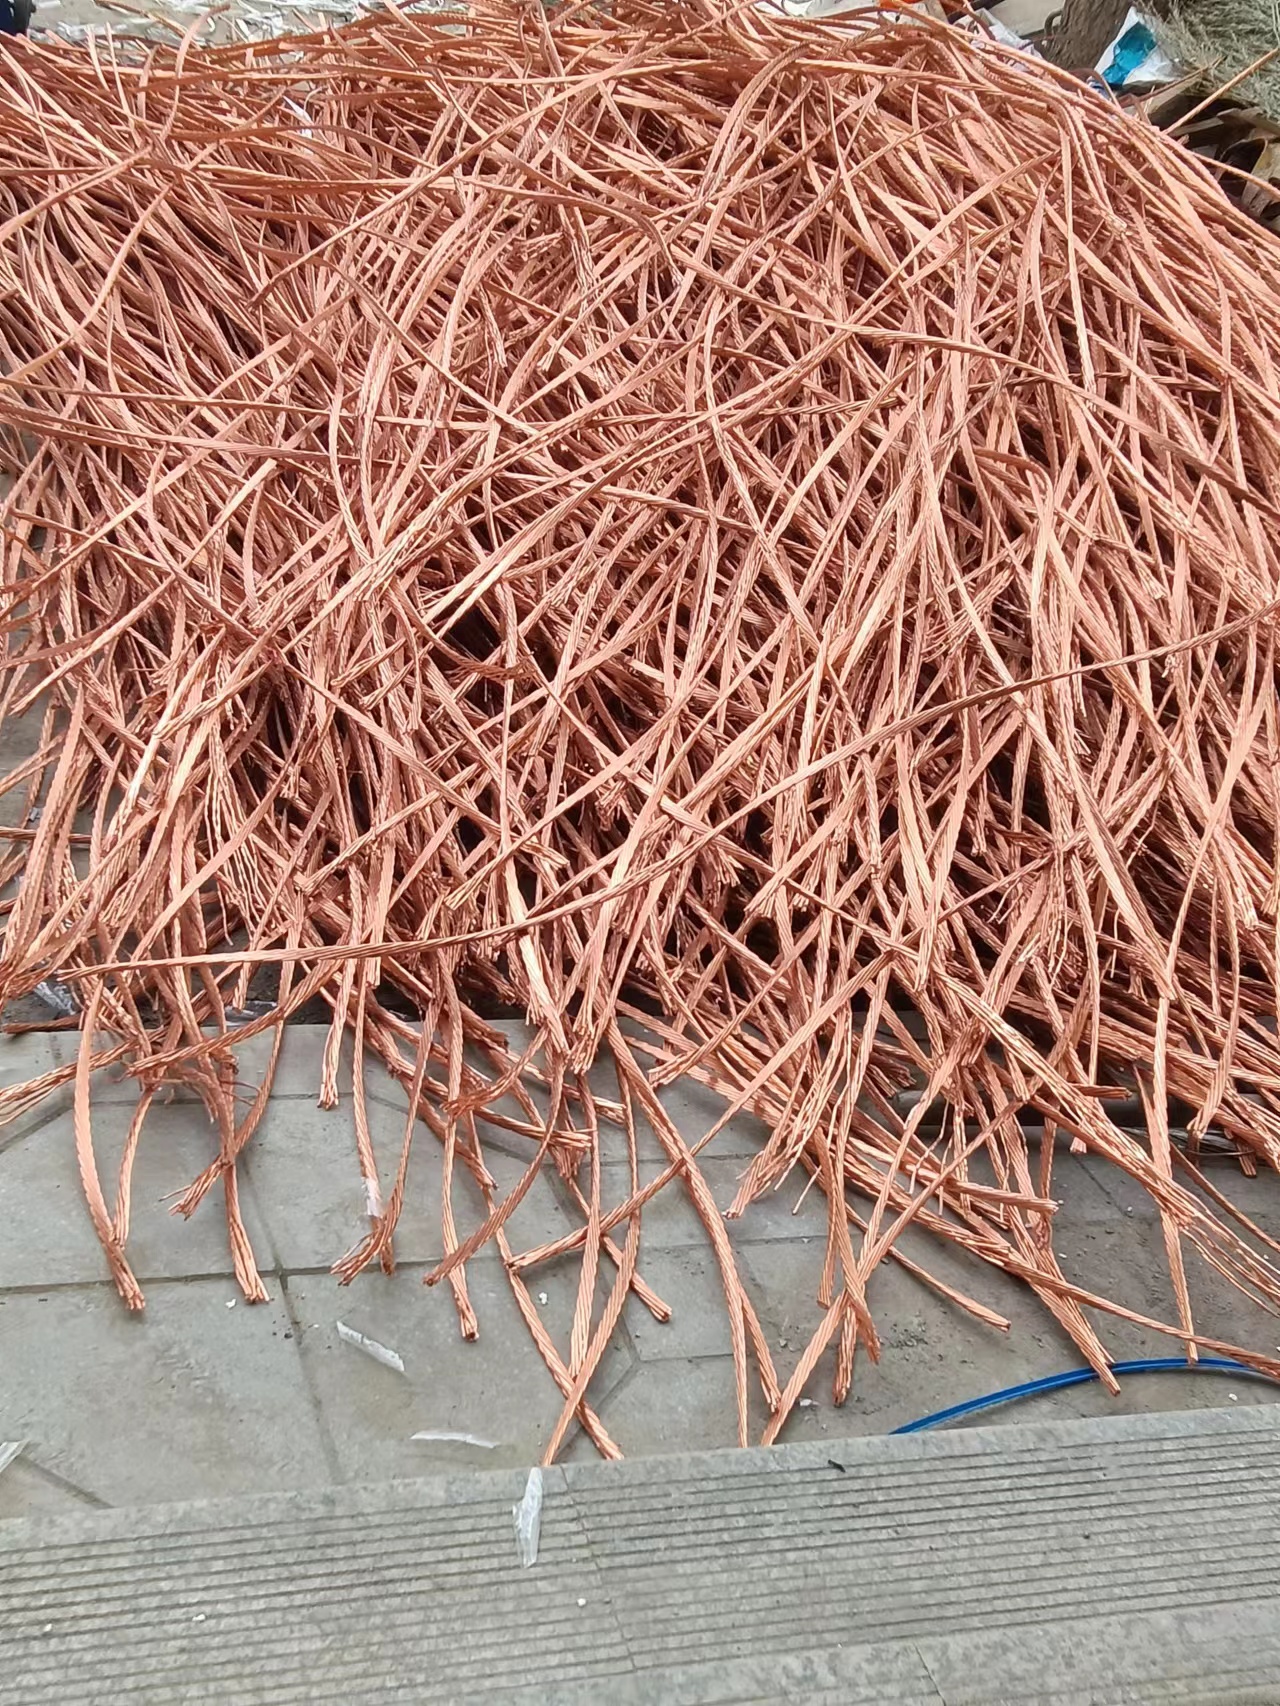 湖南株洲市电线电缆回收价格 ，废旧电线电缆回收价格，钢芯铝绞线回收价格。